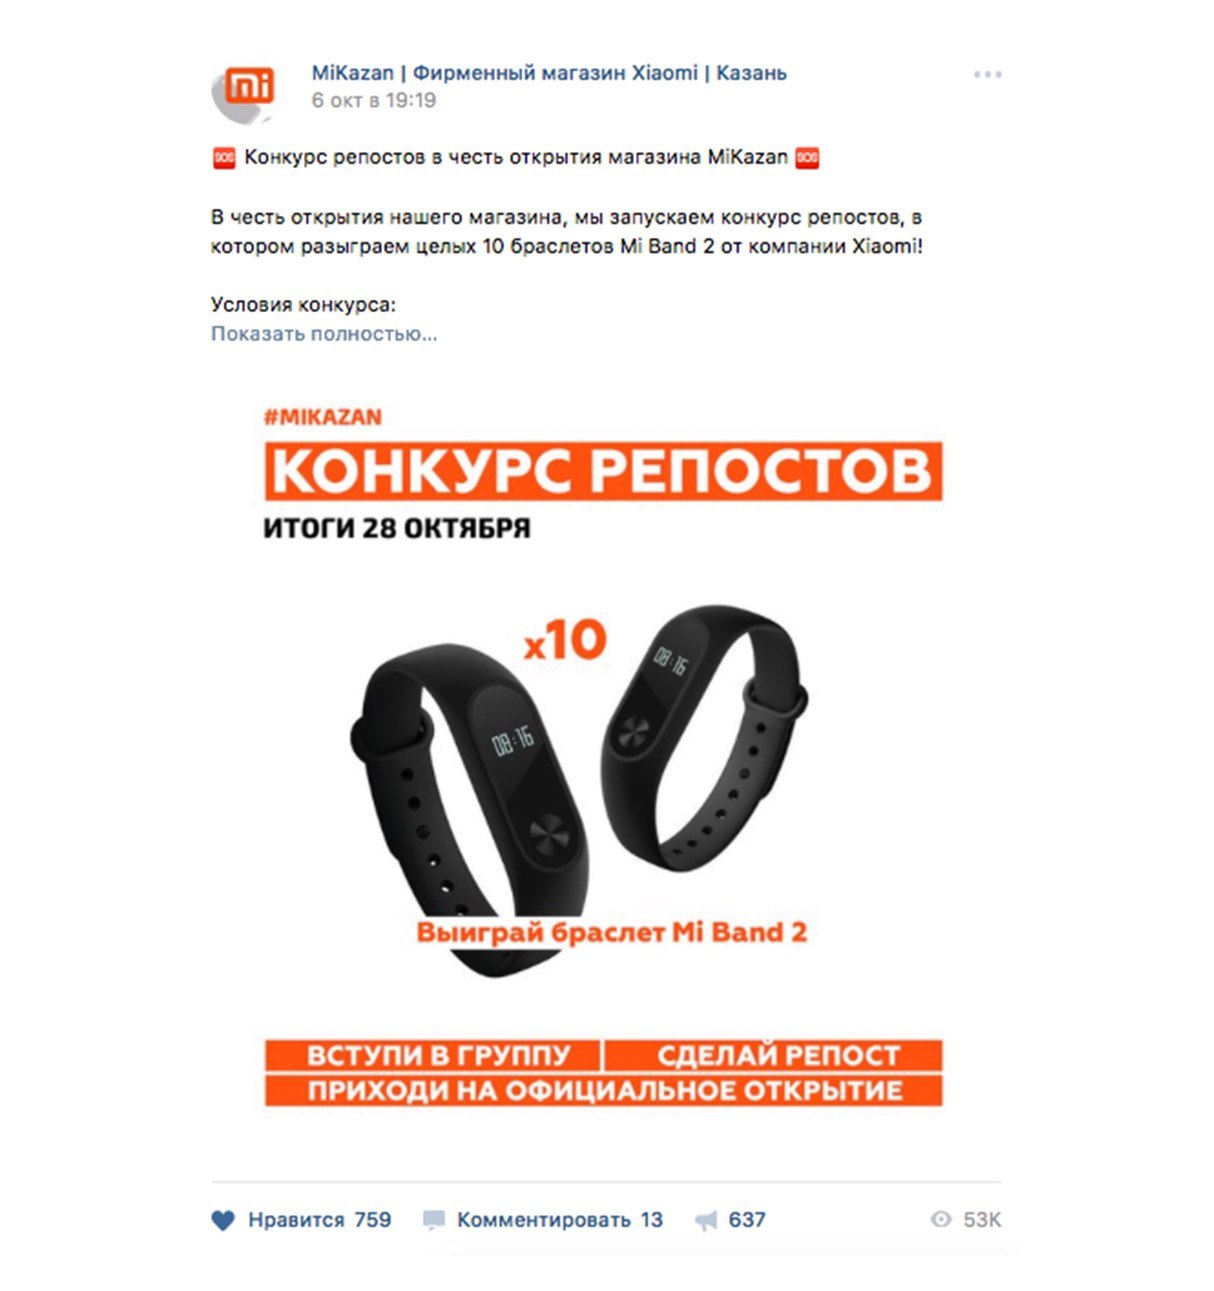 Фирменный Магазин Xiaomi В Казани